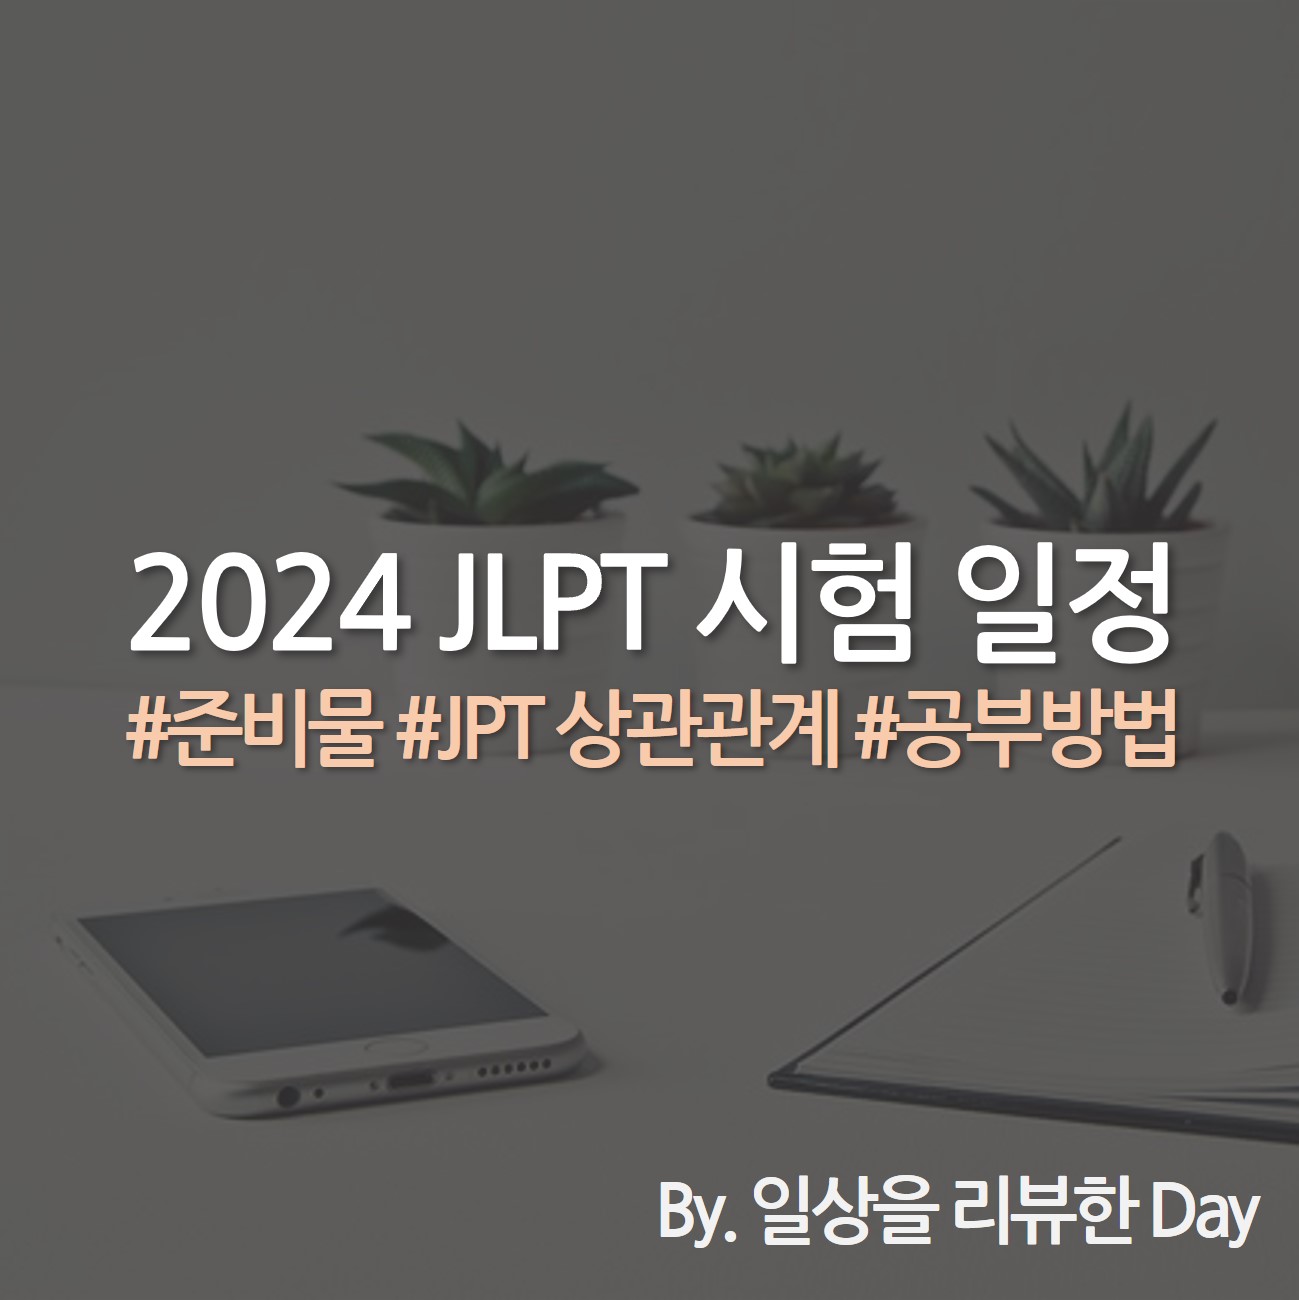 2024 JLPT 시험 일정 일본어능력시험 시험 일정 JLPT 신청 방법